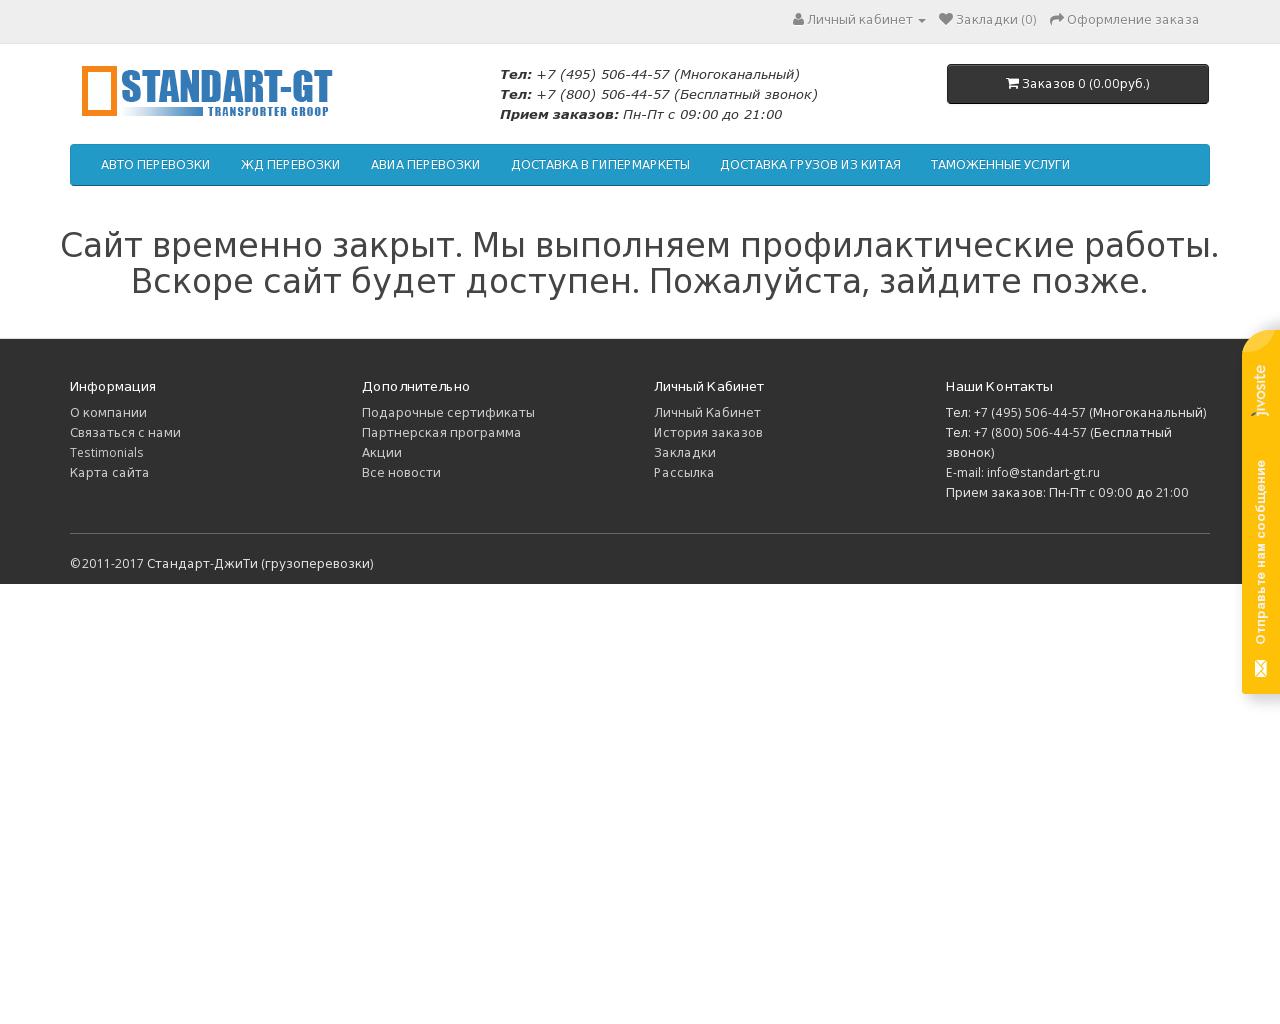 Изображение сайта standart-gt.ru в разрешении 1280x1024